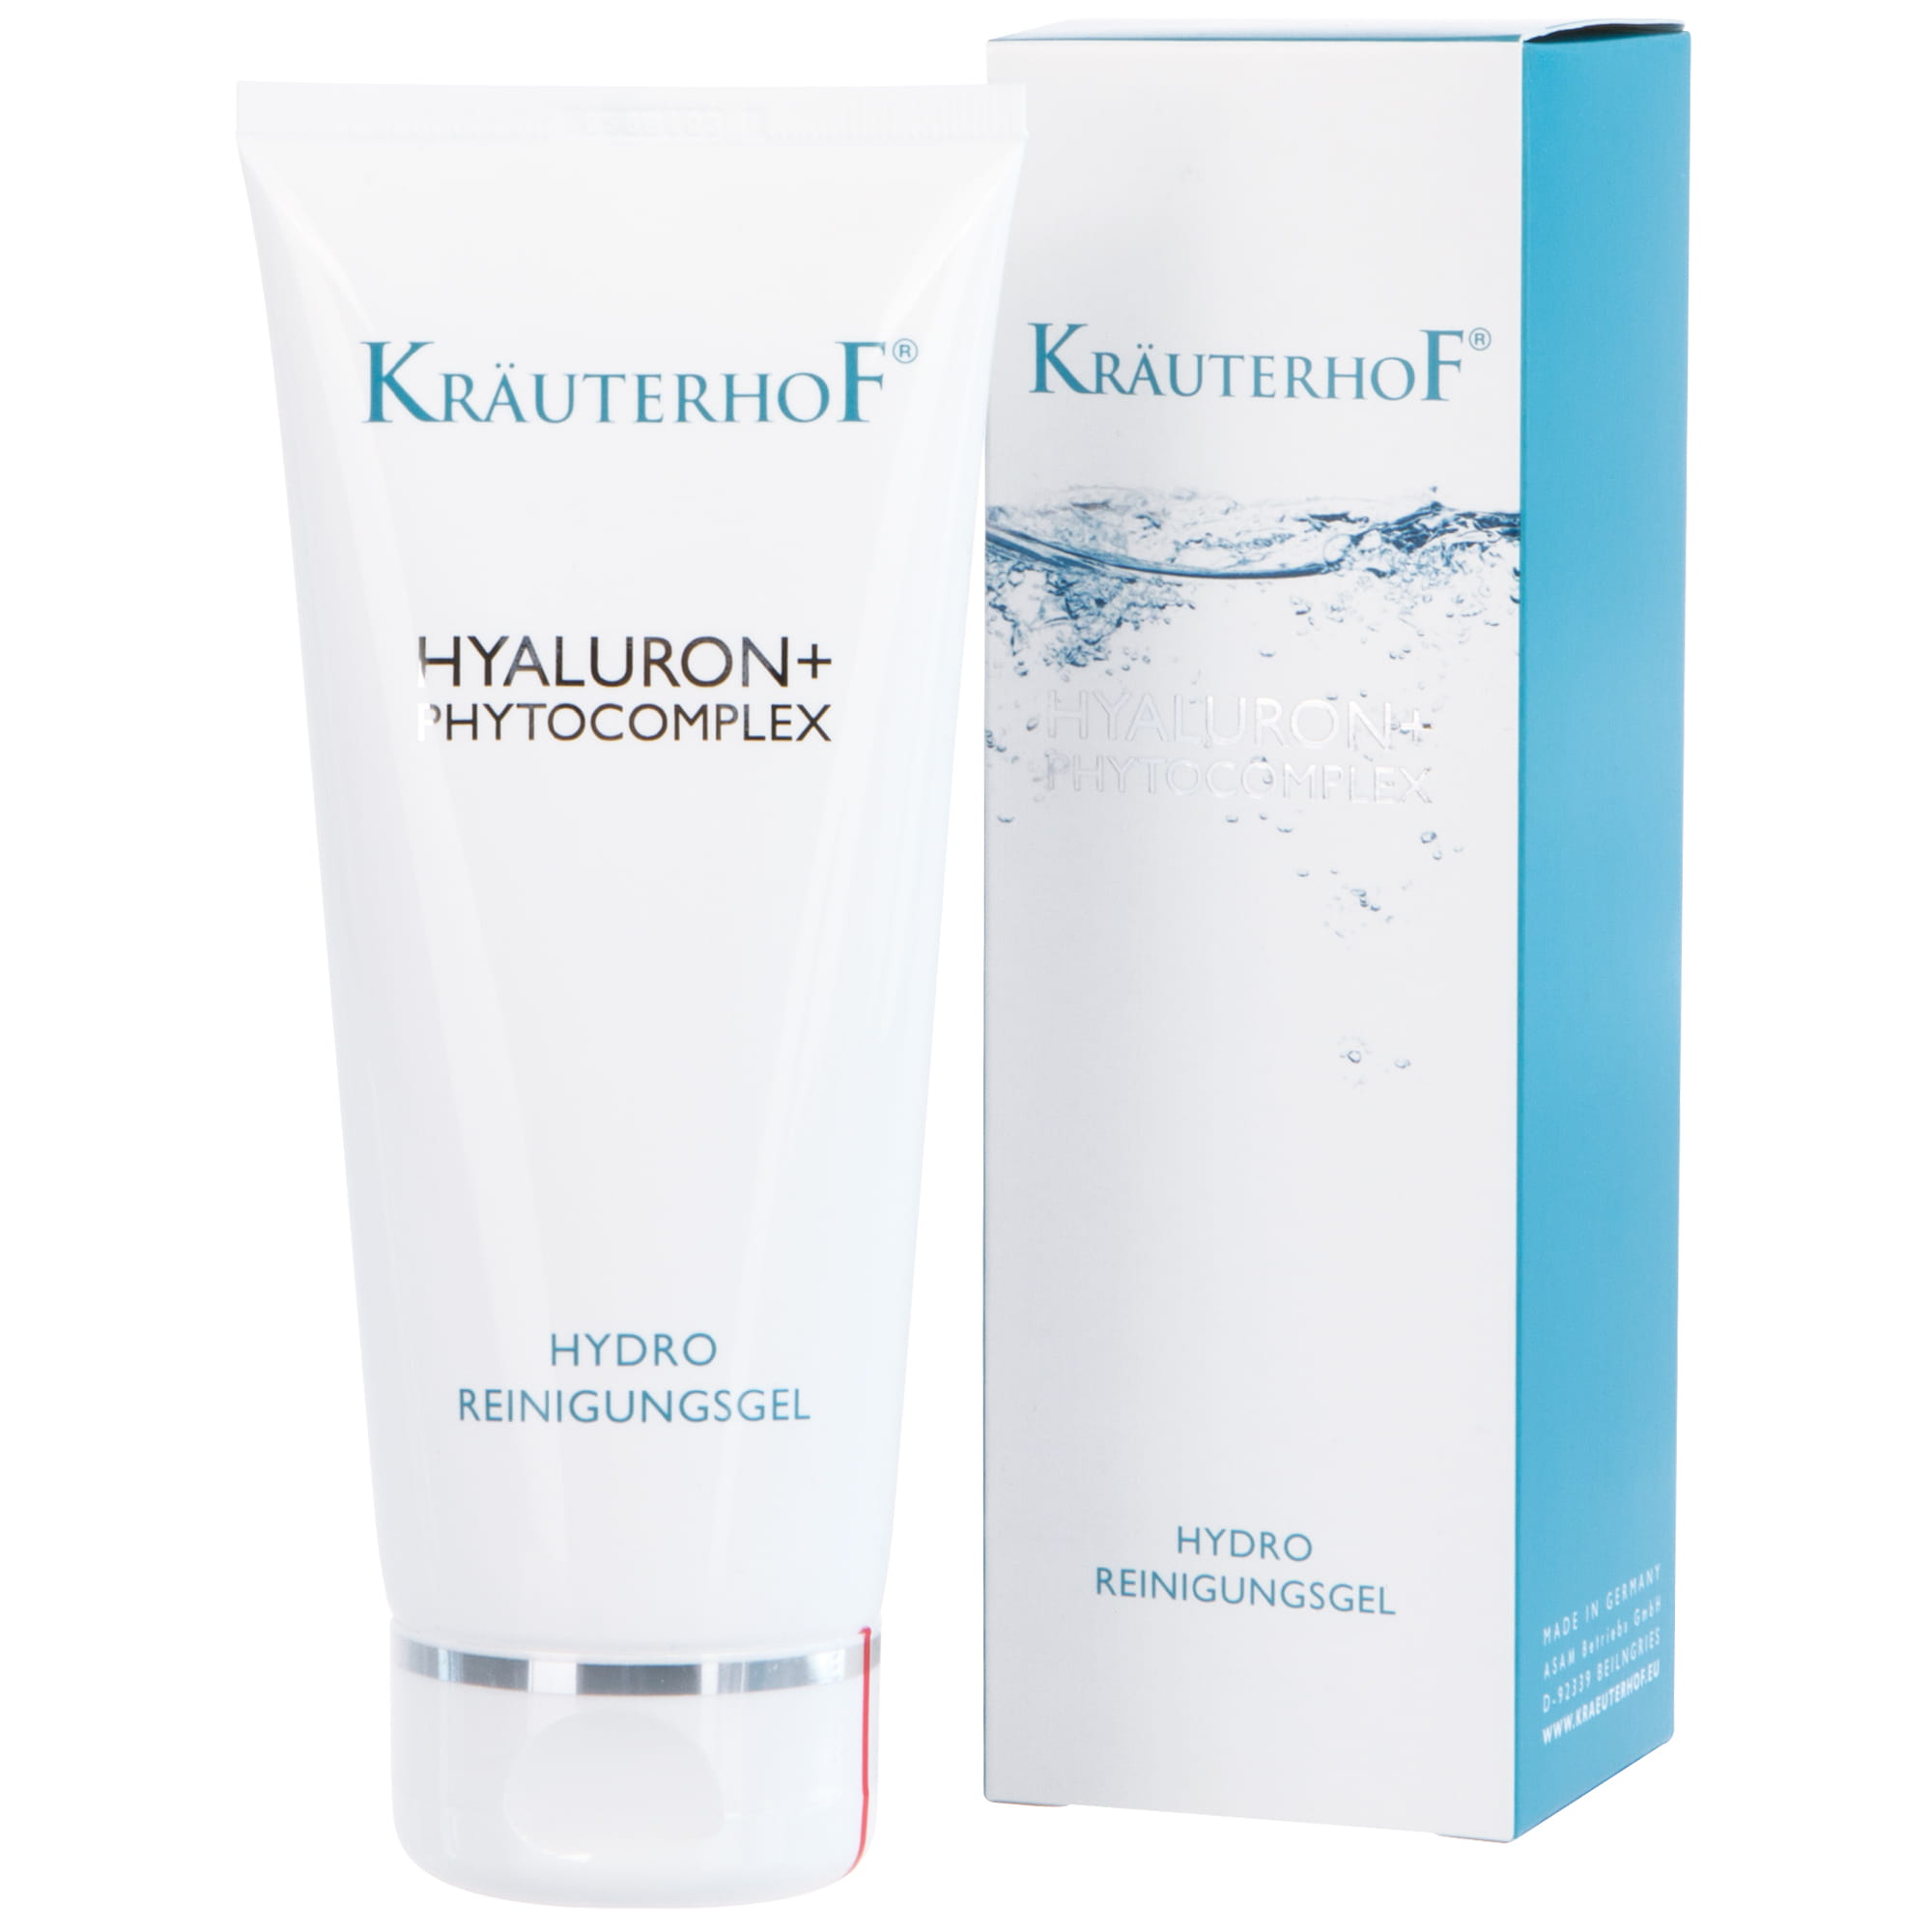 Kräuterhof® Face HYALURON+ PHYTOCOMPLEX Hydro Reinigungsgel 200 ml